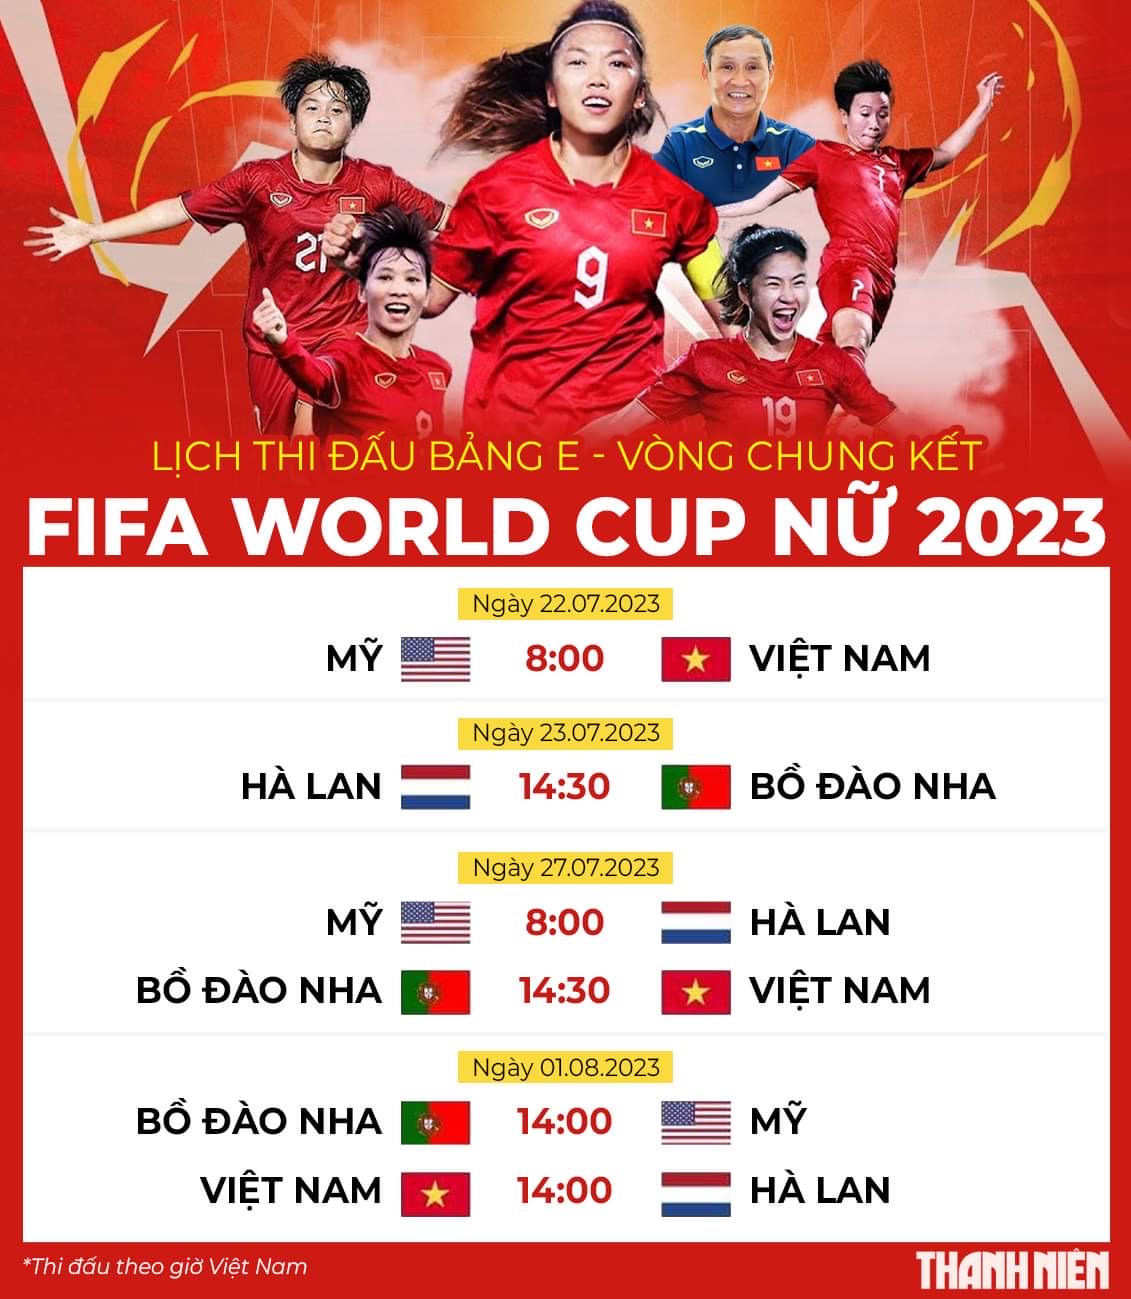 23 chiến binh của đội tuyển nữ Việt Nam sẵn sàng cho World Cup 2023 - Ảnh 1.